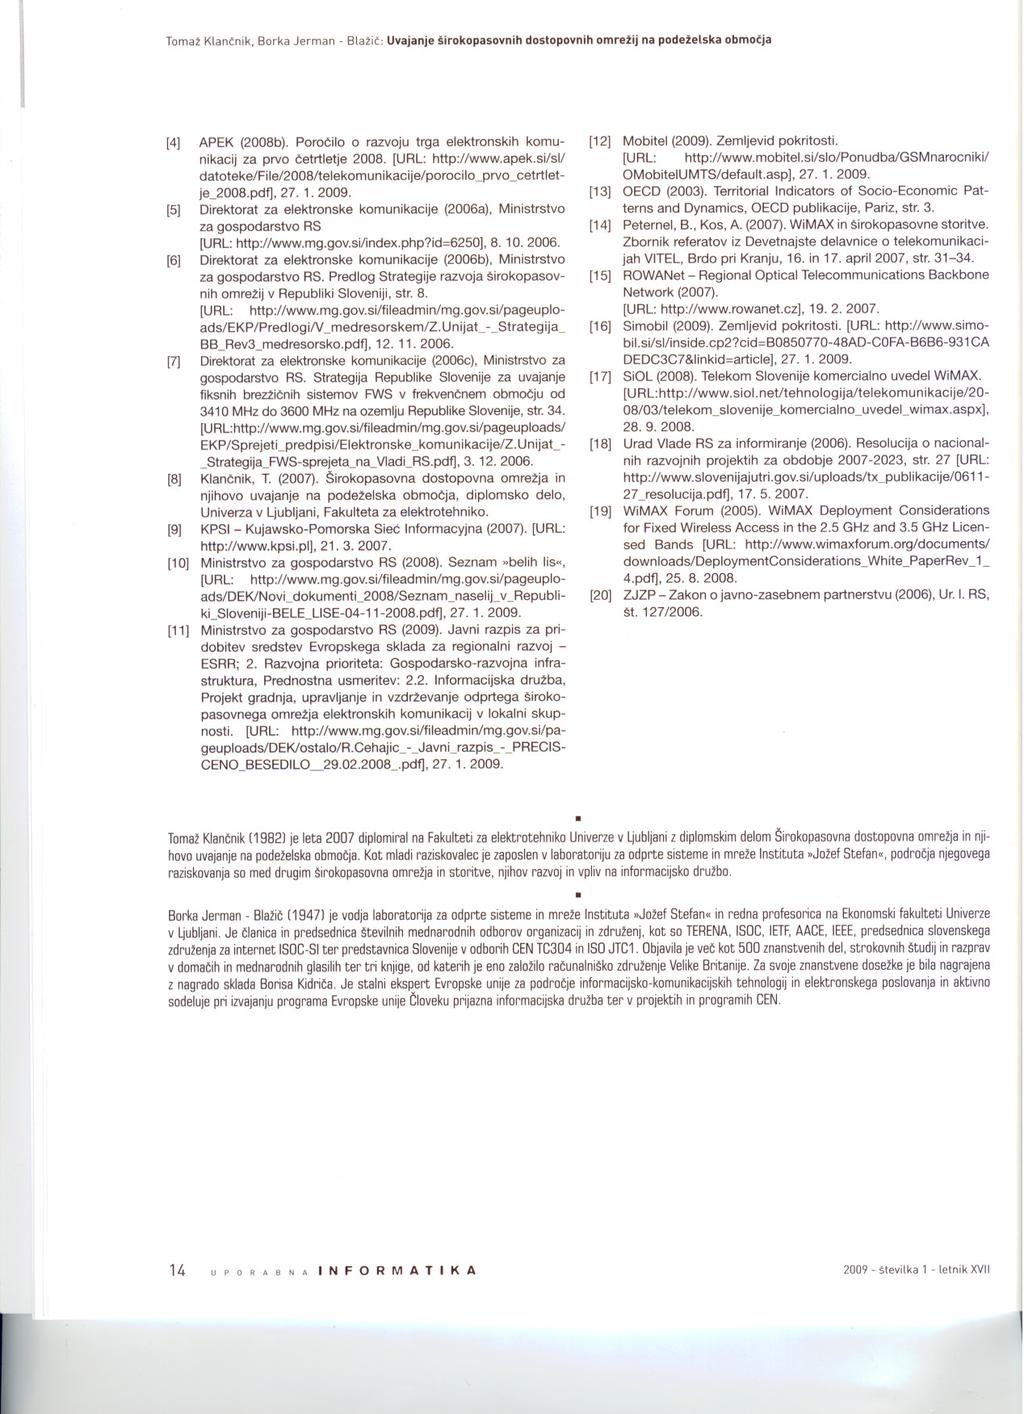 Tomaž Klantnik, Borka Jerman - Blažit: Uvajanje širokopasovnih dostopovnih omrežij na podeželska obmotja [4] APEK (2008b). Porocilo O razvoju trga elektronskih komunikacij za prvo cetrtletje 2008.